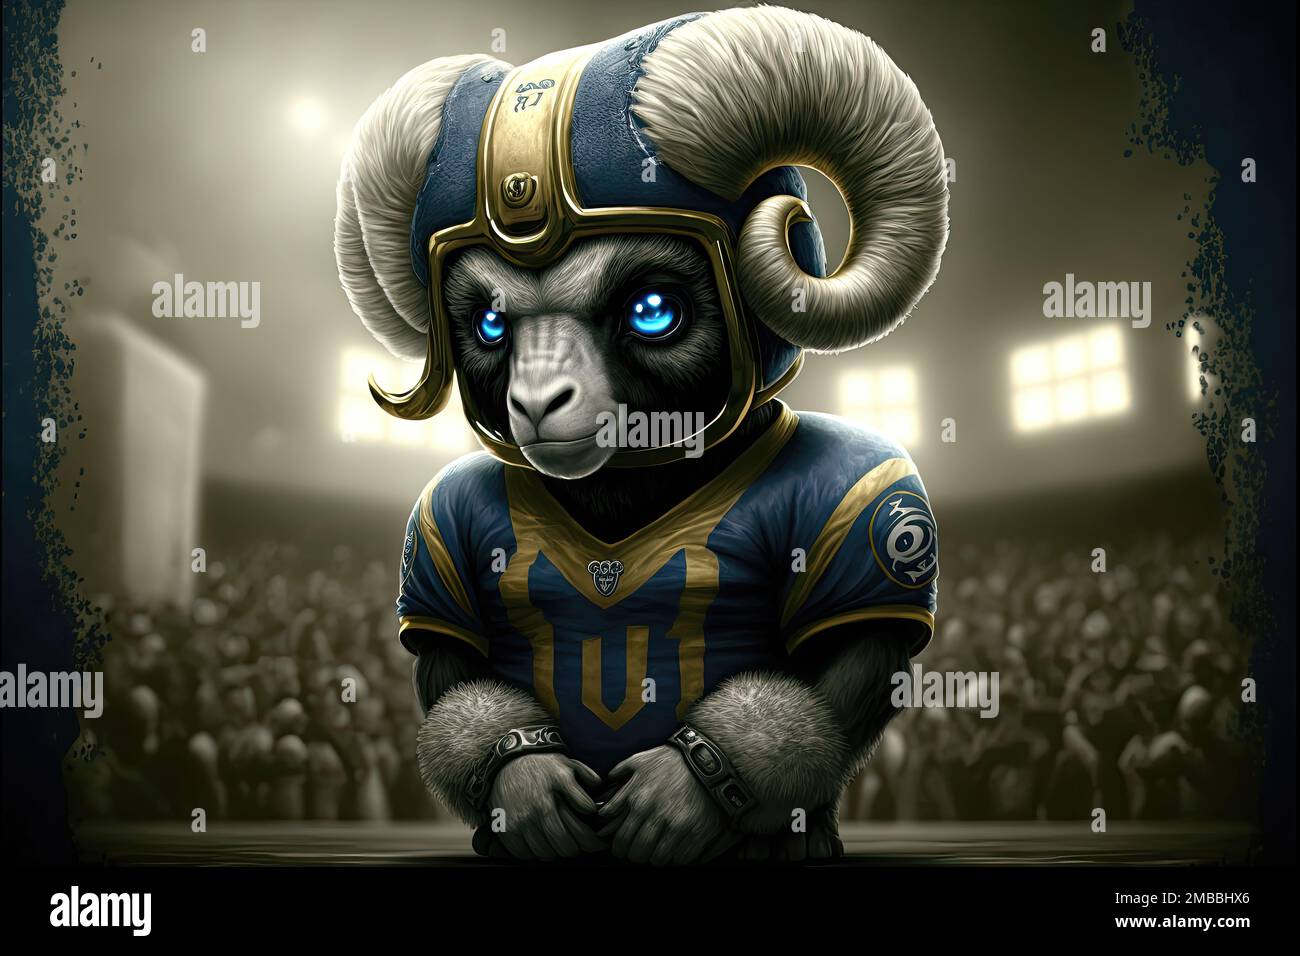 La mascotte dei Los Angeles Rams, una squadra di calcio americana professionista, si chiama Rampage. Rampage è un grande montone antropomorfo con un blu e voi Foto Stock